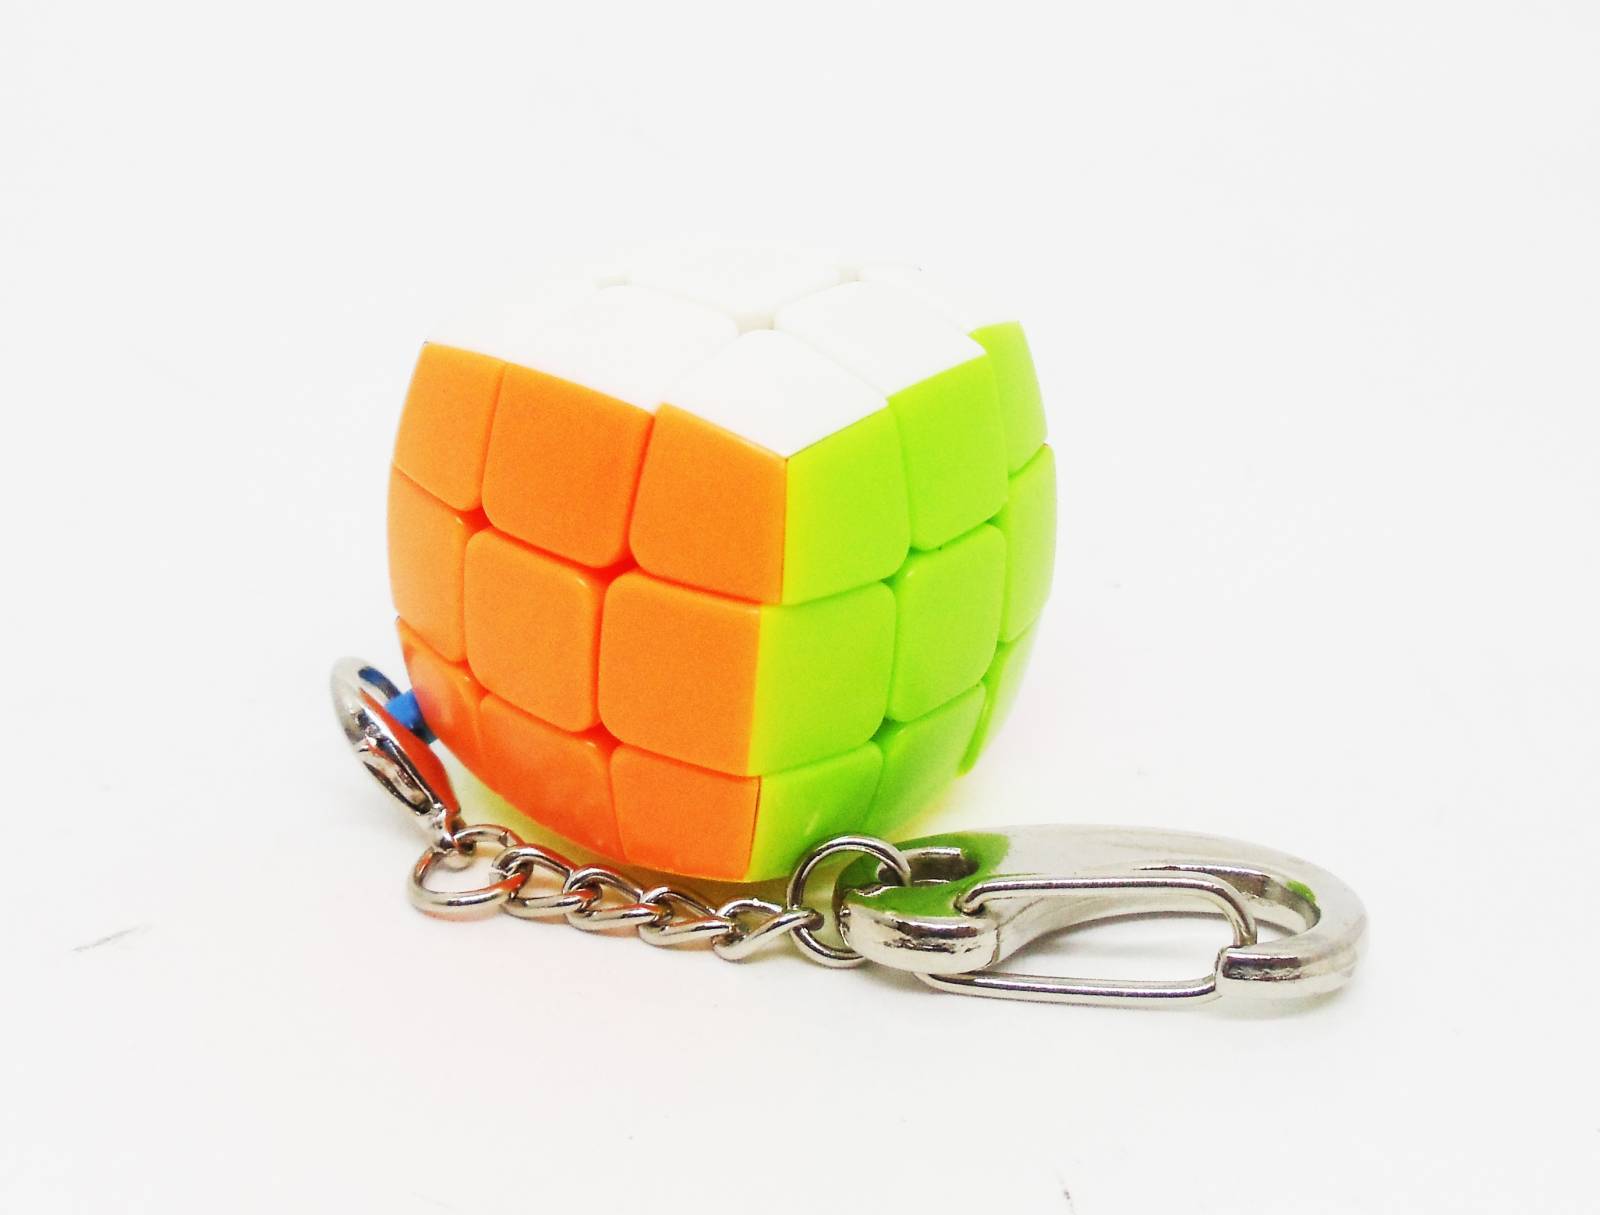 Comprar Cubo Mágico Divertido Color 3X3X3 Dm Toys